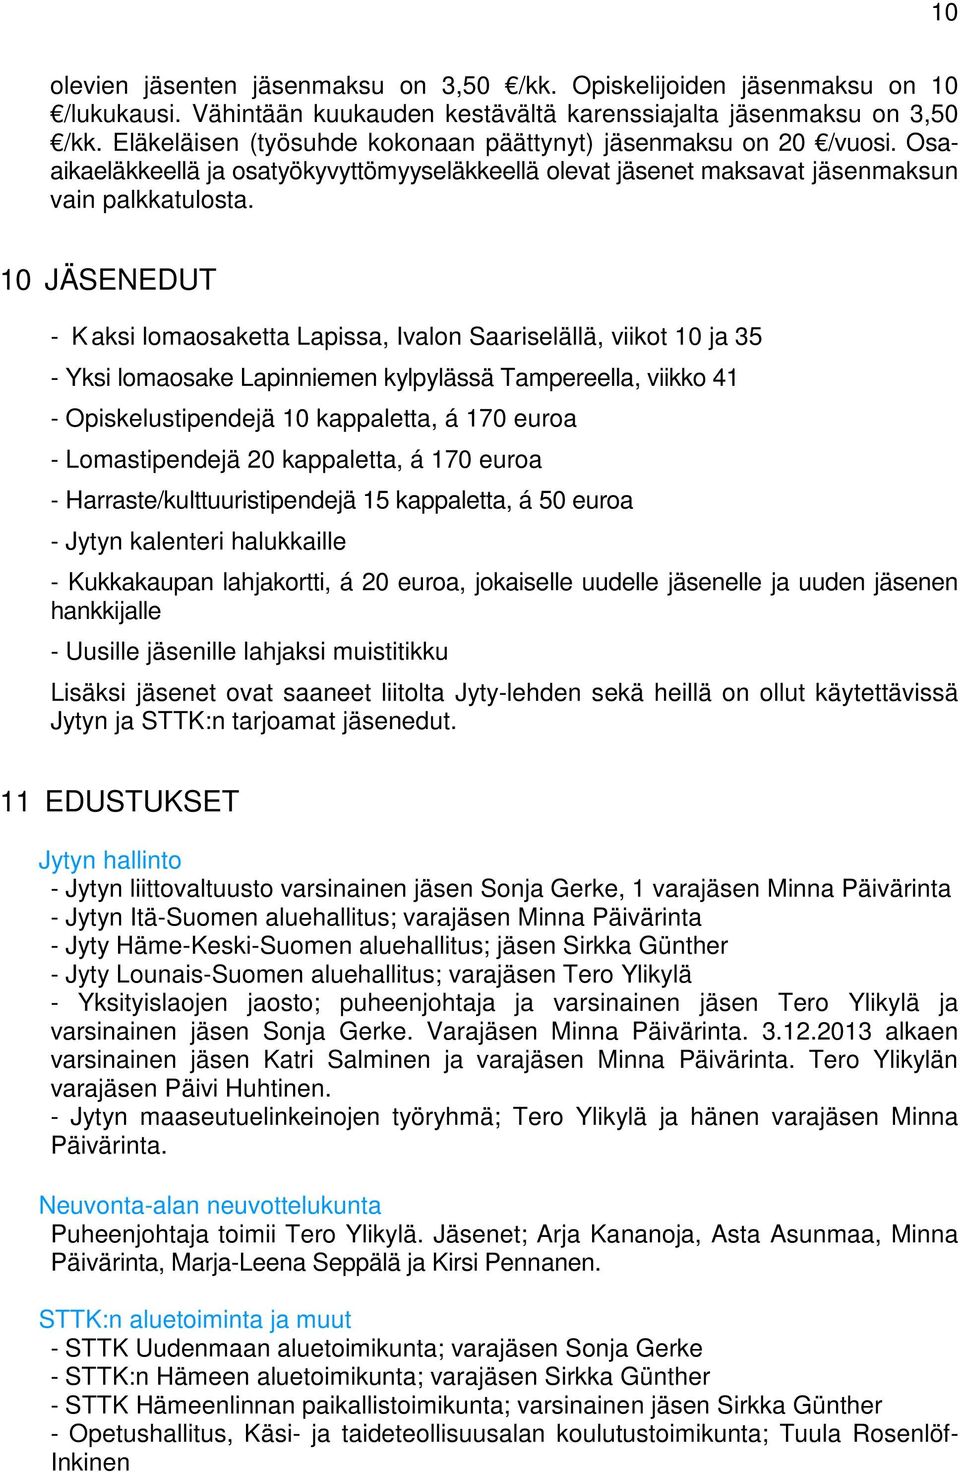 10 JÄSENEDUT - Kaksi lomaosaketta Lapissa, Ivalon Saariselällä, viikot 10 ja 35 - Yksi lomaosake Lapinniemen kylpylässä Tampereella, viikko 41 - Opiskelustipendejä 10 kappaletta, á 170 euroa -